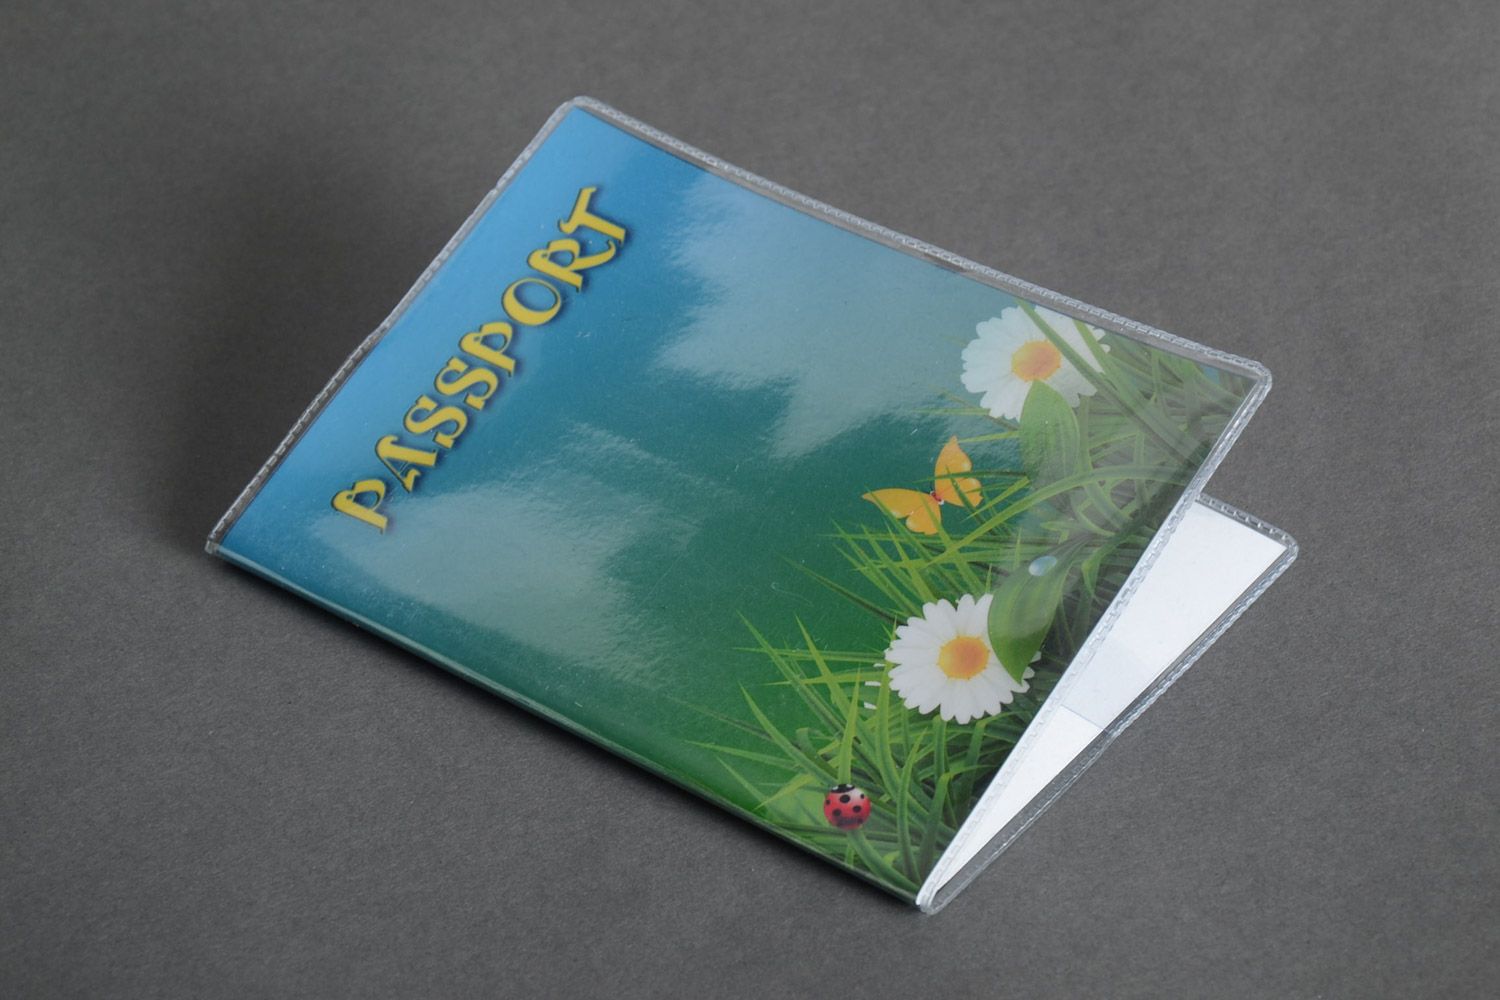 Пластиковая обложка для паспорта с цветочным фотопринтом ручной работы фото 2